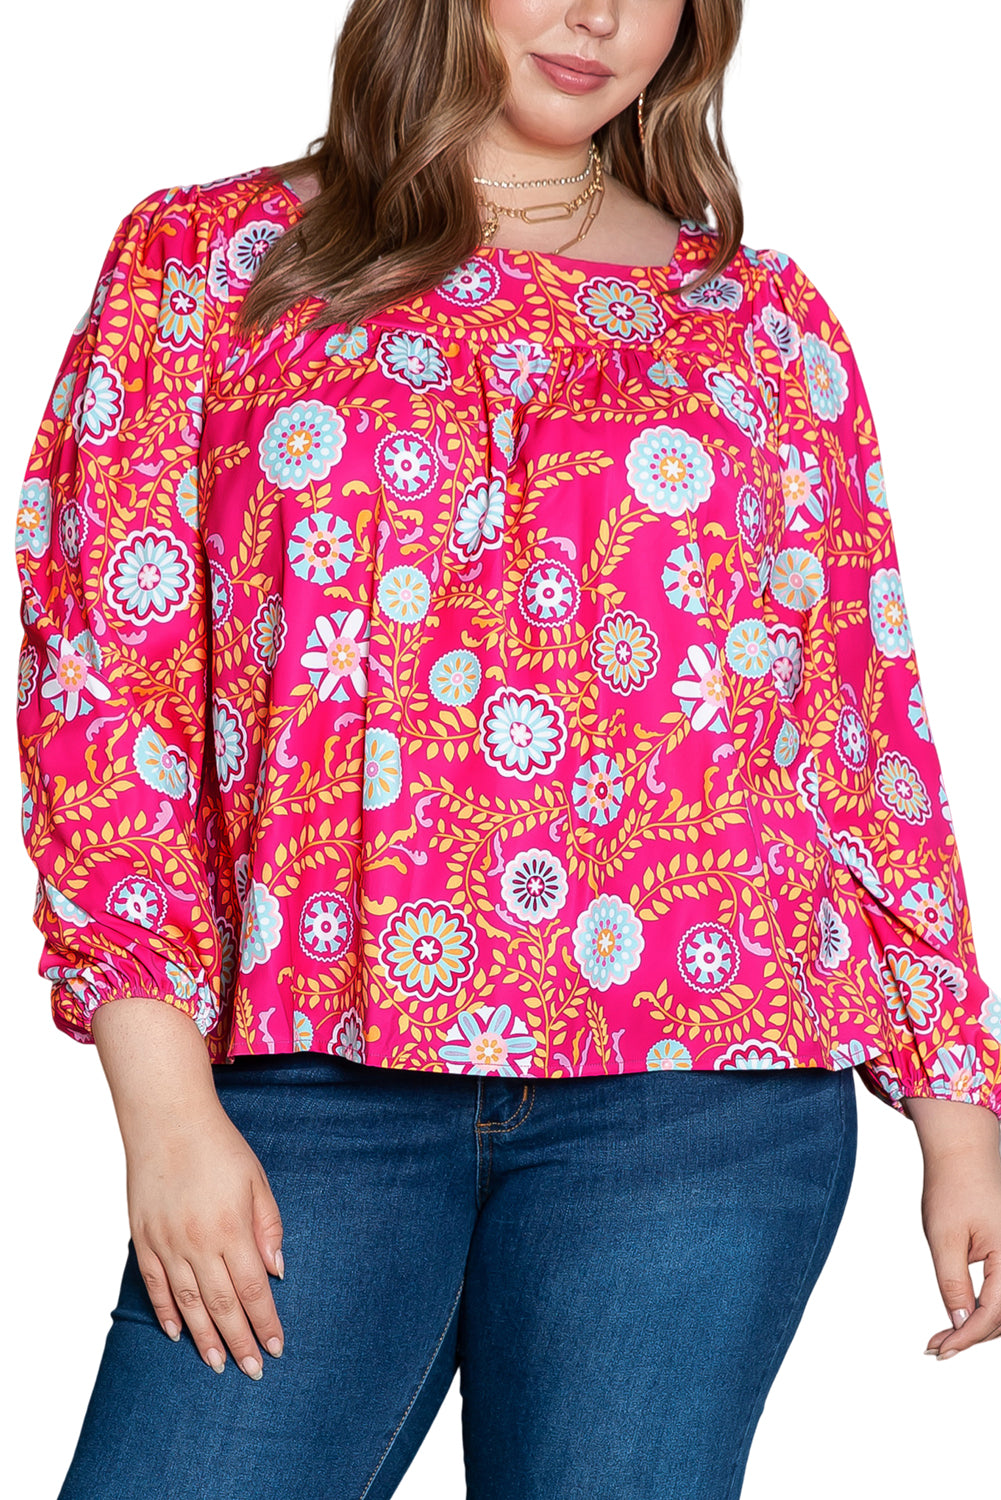 Rožnata bluza s cvetličnim ovratnikom velike velikosti